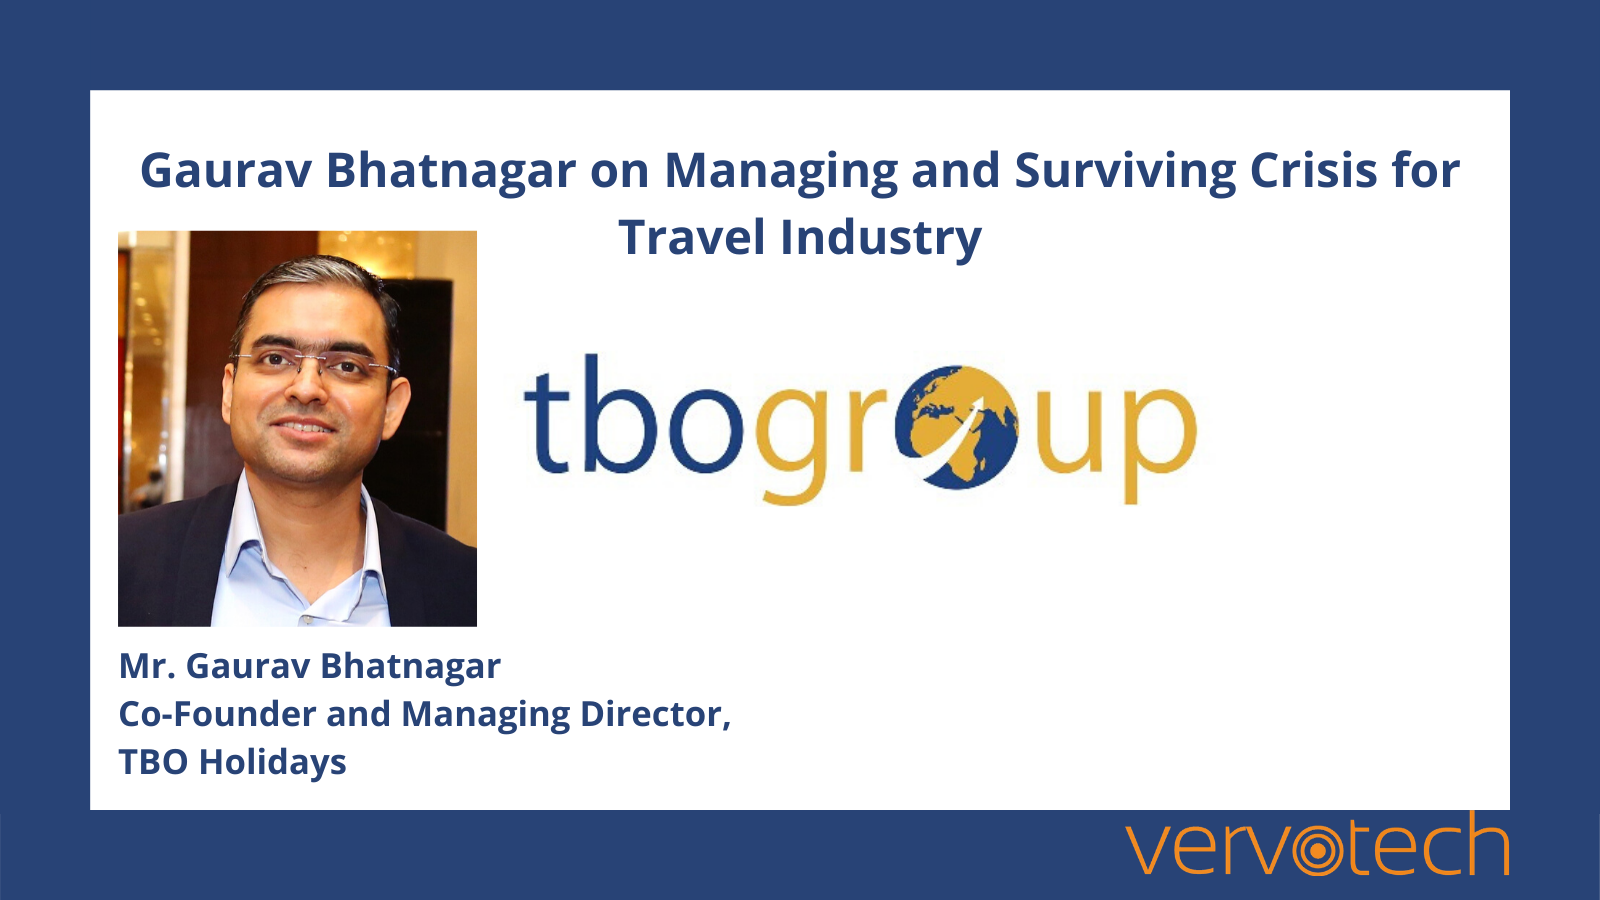 Gaurav Bhatnagar sur la gestion et la survie de la crise dans le secteur du voyage.